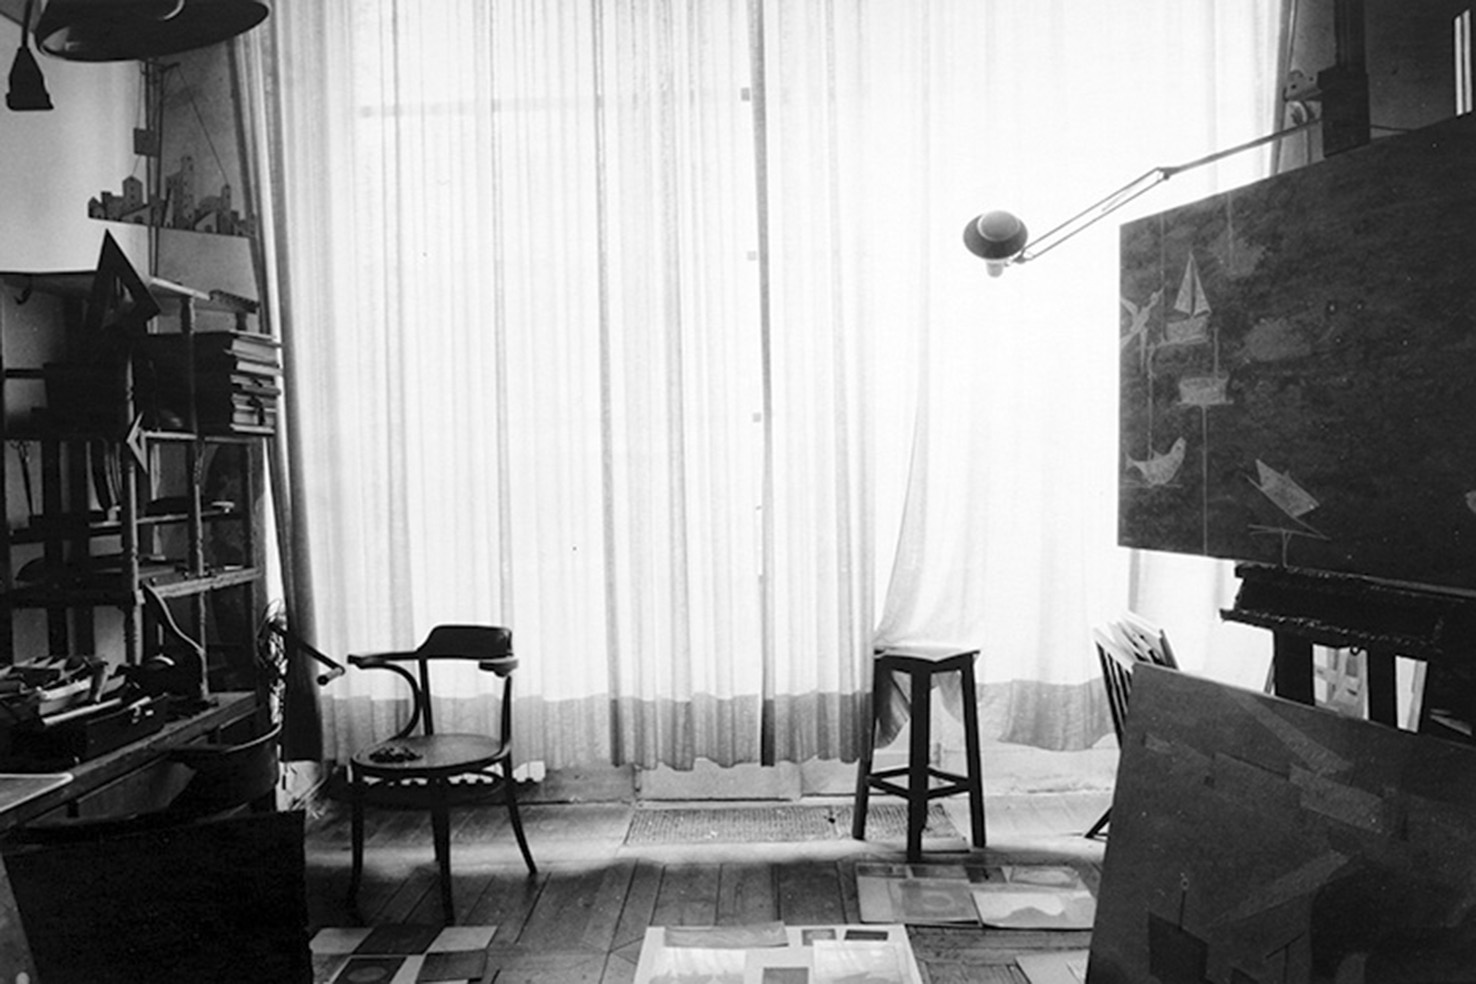 E. Obiso, 'La casa di Francesco', lo studio, Torino, 2013, foto b/n © l'autore / G. Costa / Archivio Casorati